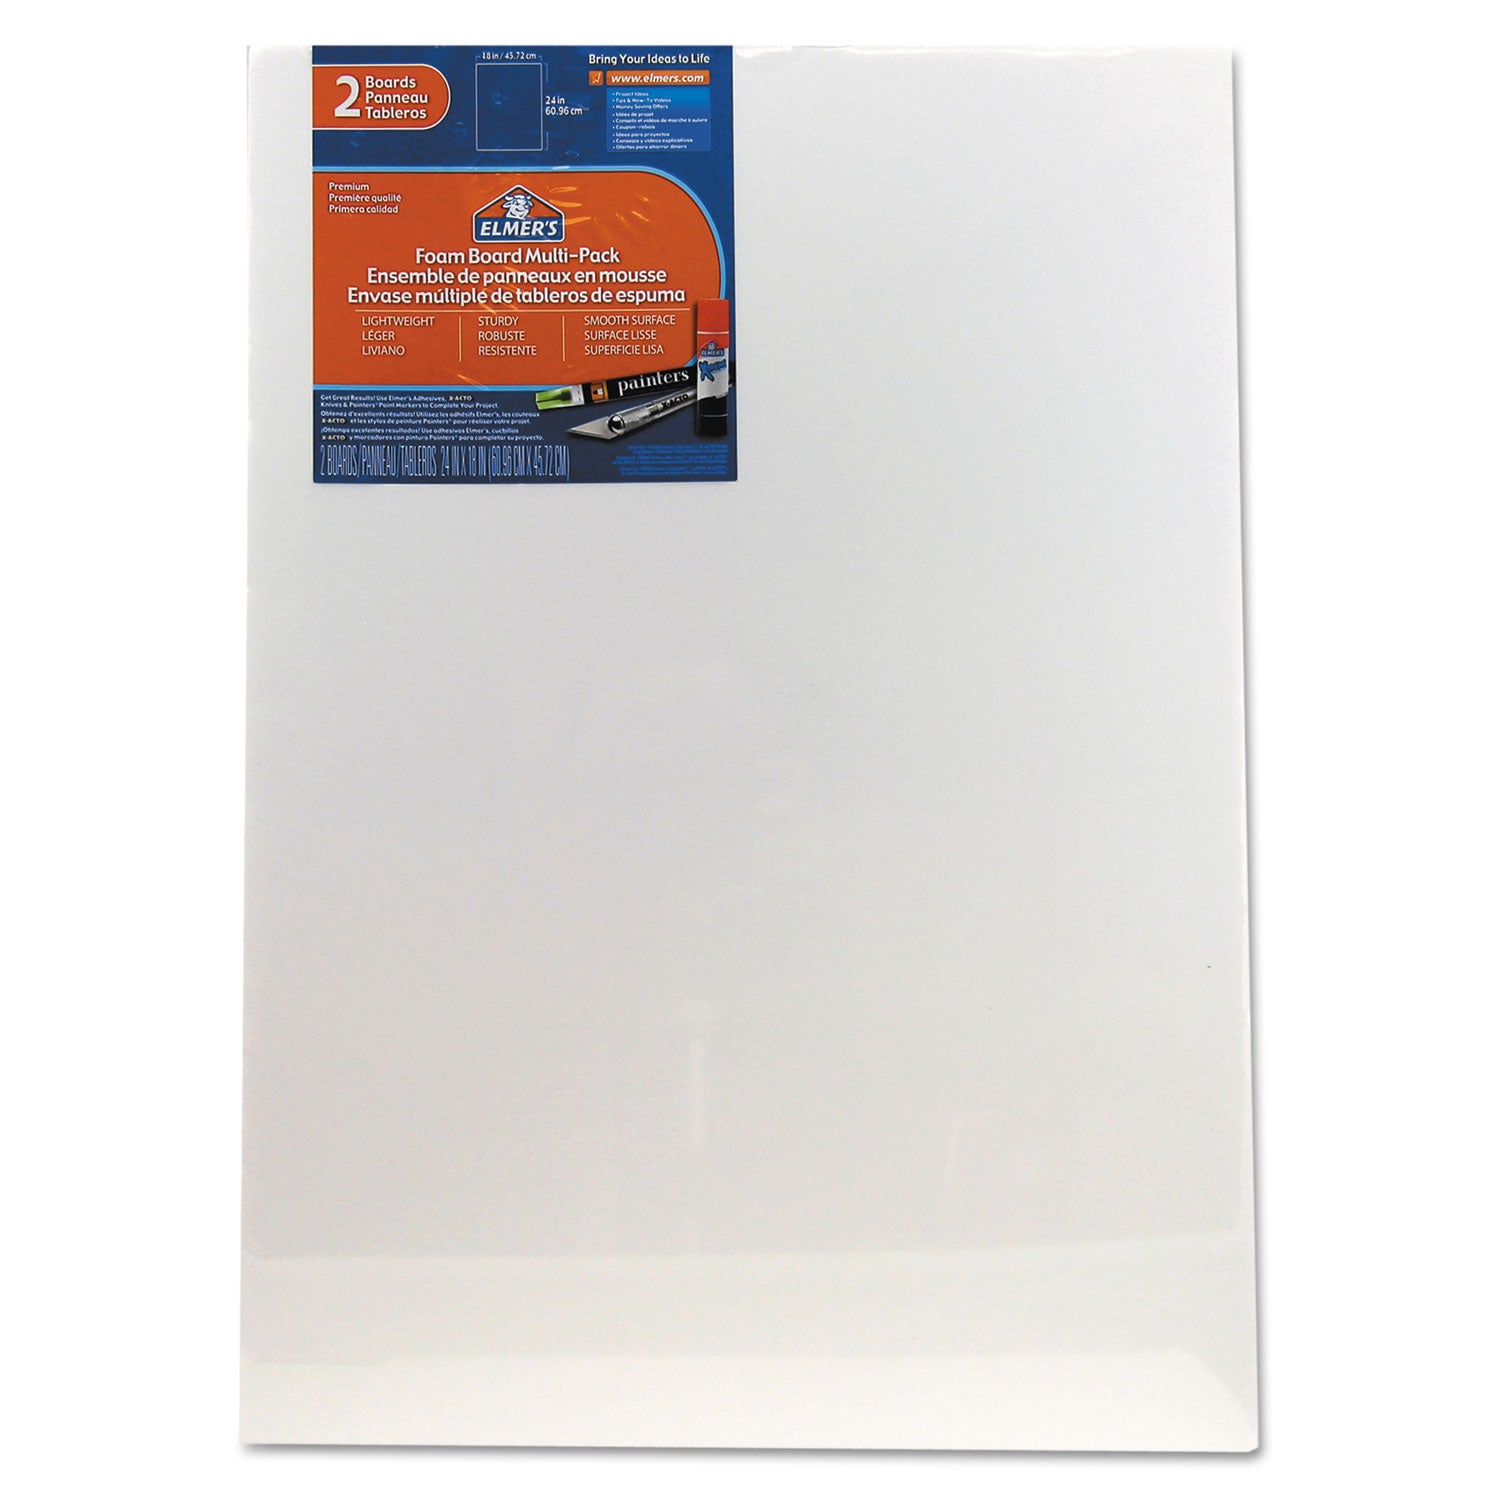 white-pre-cut-foam-board-multi-packs-18-x-24-2-pack_acj07010109 - 1